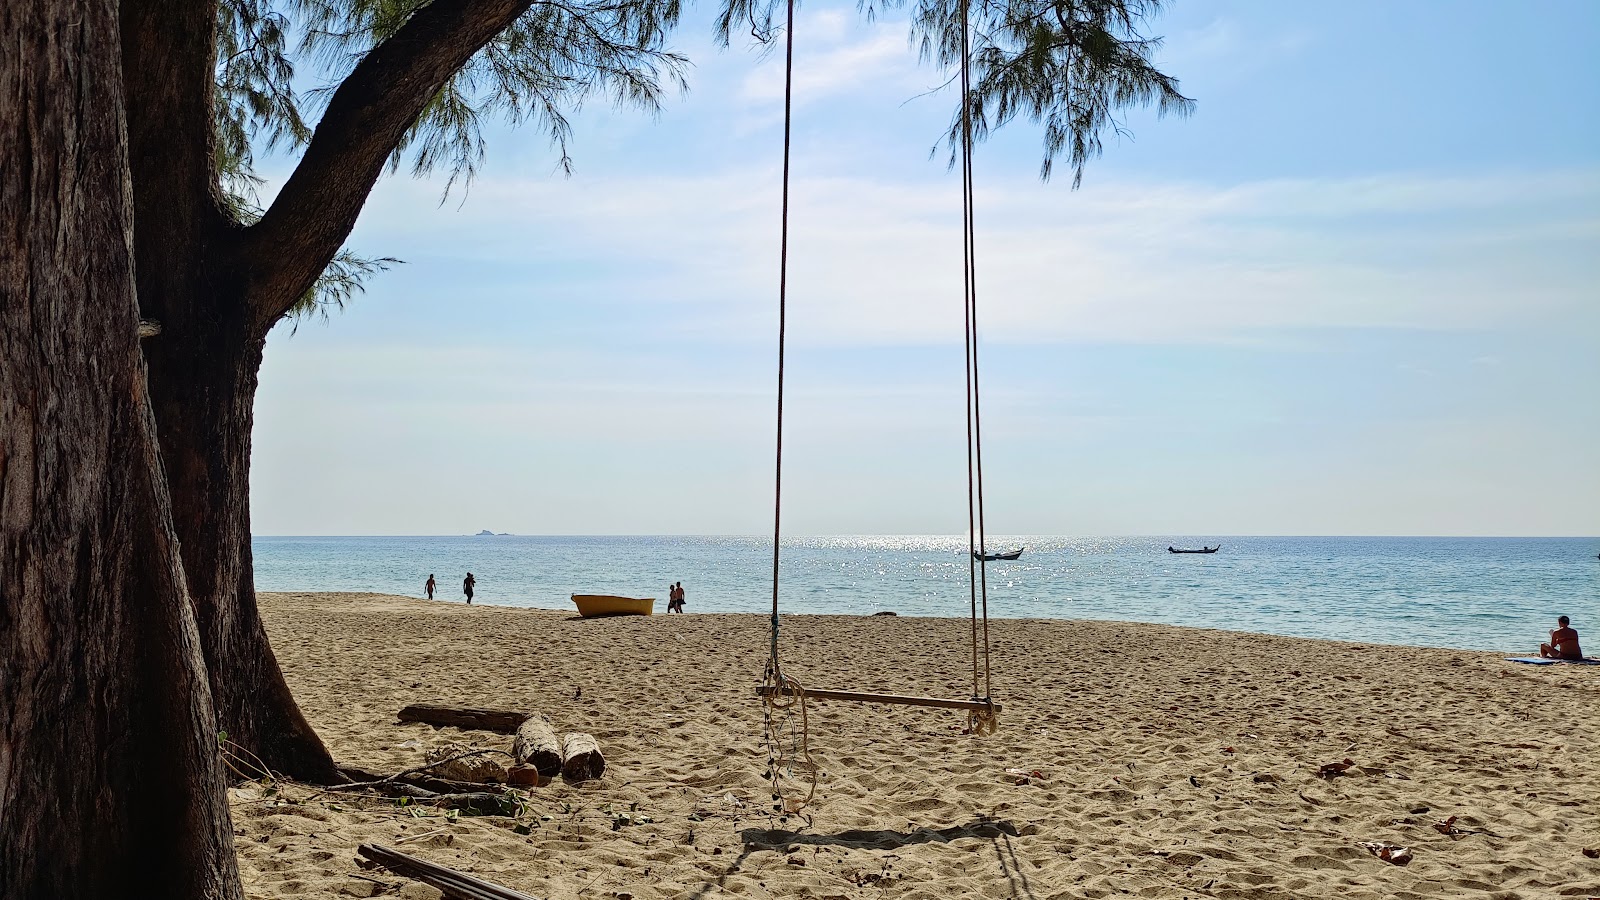 Photo de Nai Thon Beach - endroit populaire parmi les connaisseurs de la détente